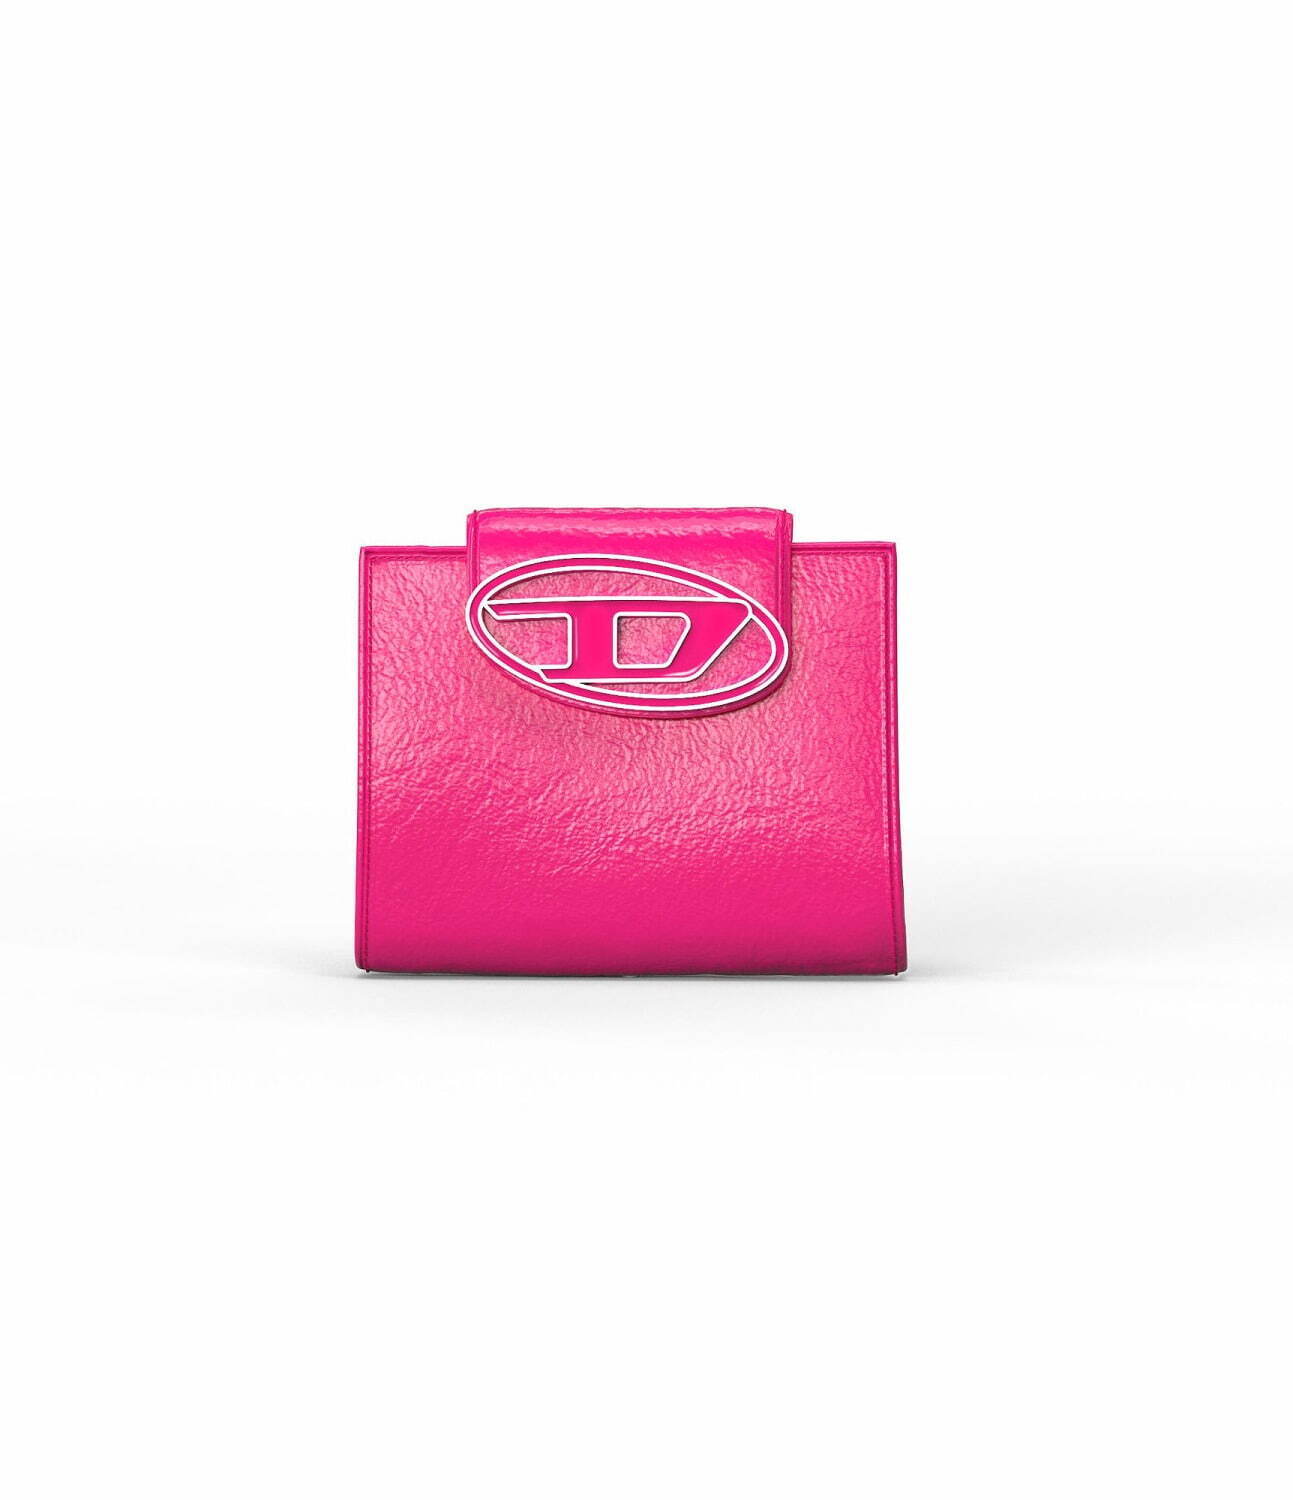 ディーゼル新作財布「ワンダーカミール」、“D ロゴ”×ネオン